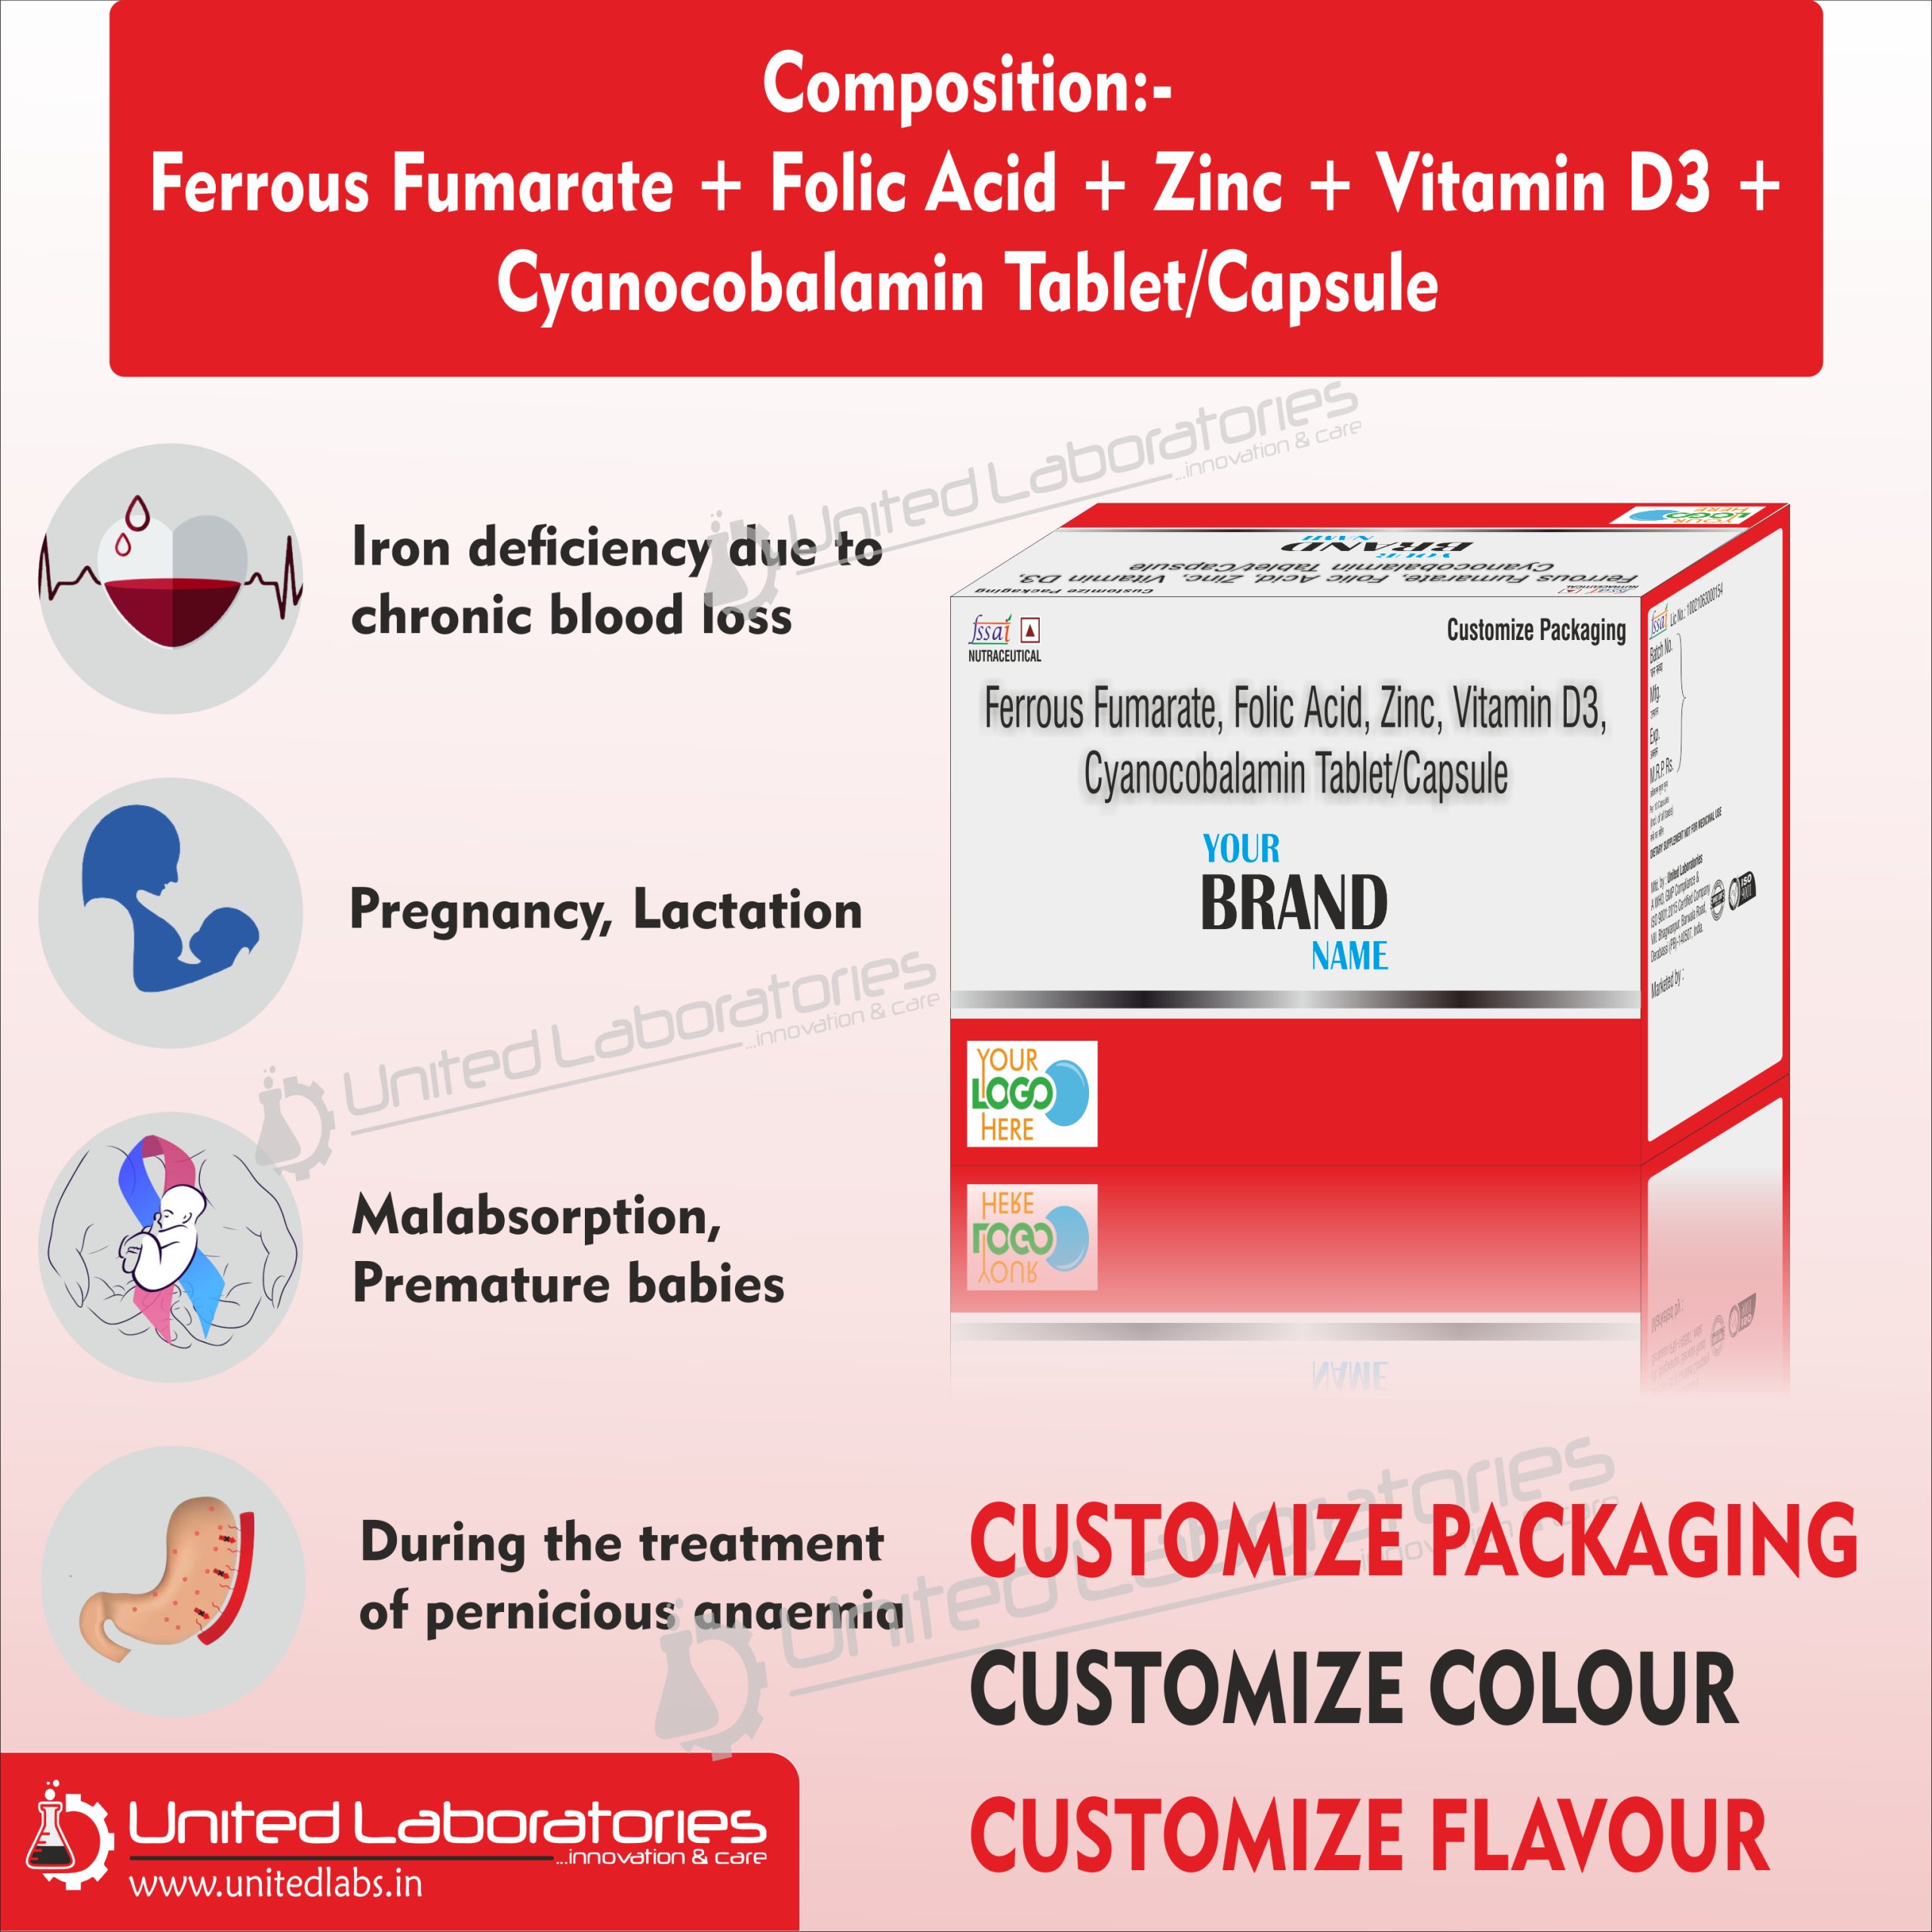 Ferrous Fumarate + Folic Acid + Zinc + Vitamin D3 + Cyanocobalamin Tablet Capsule